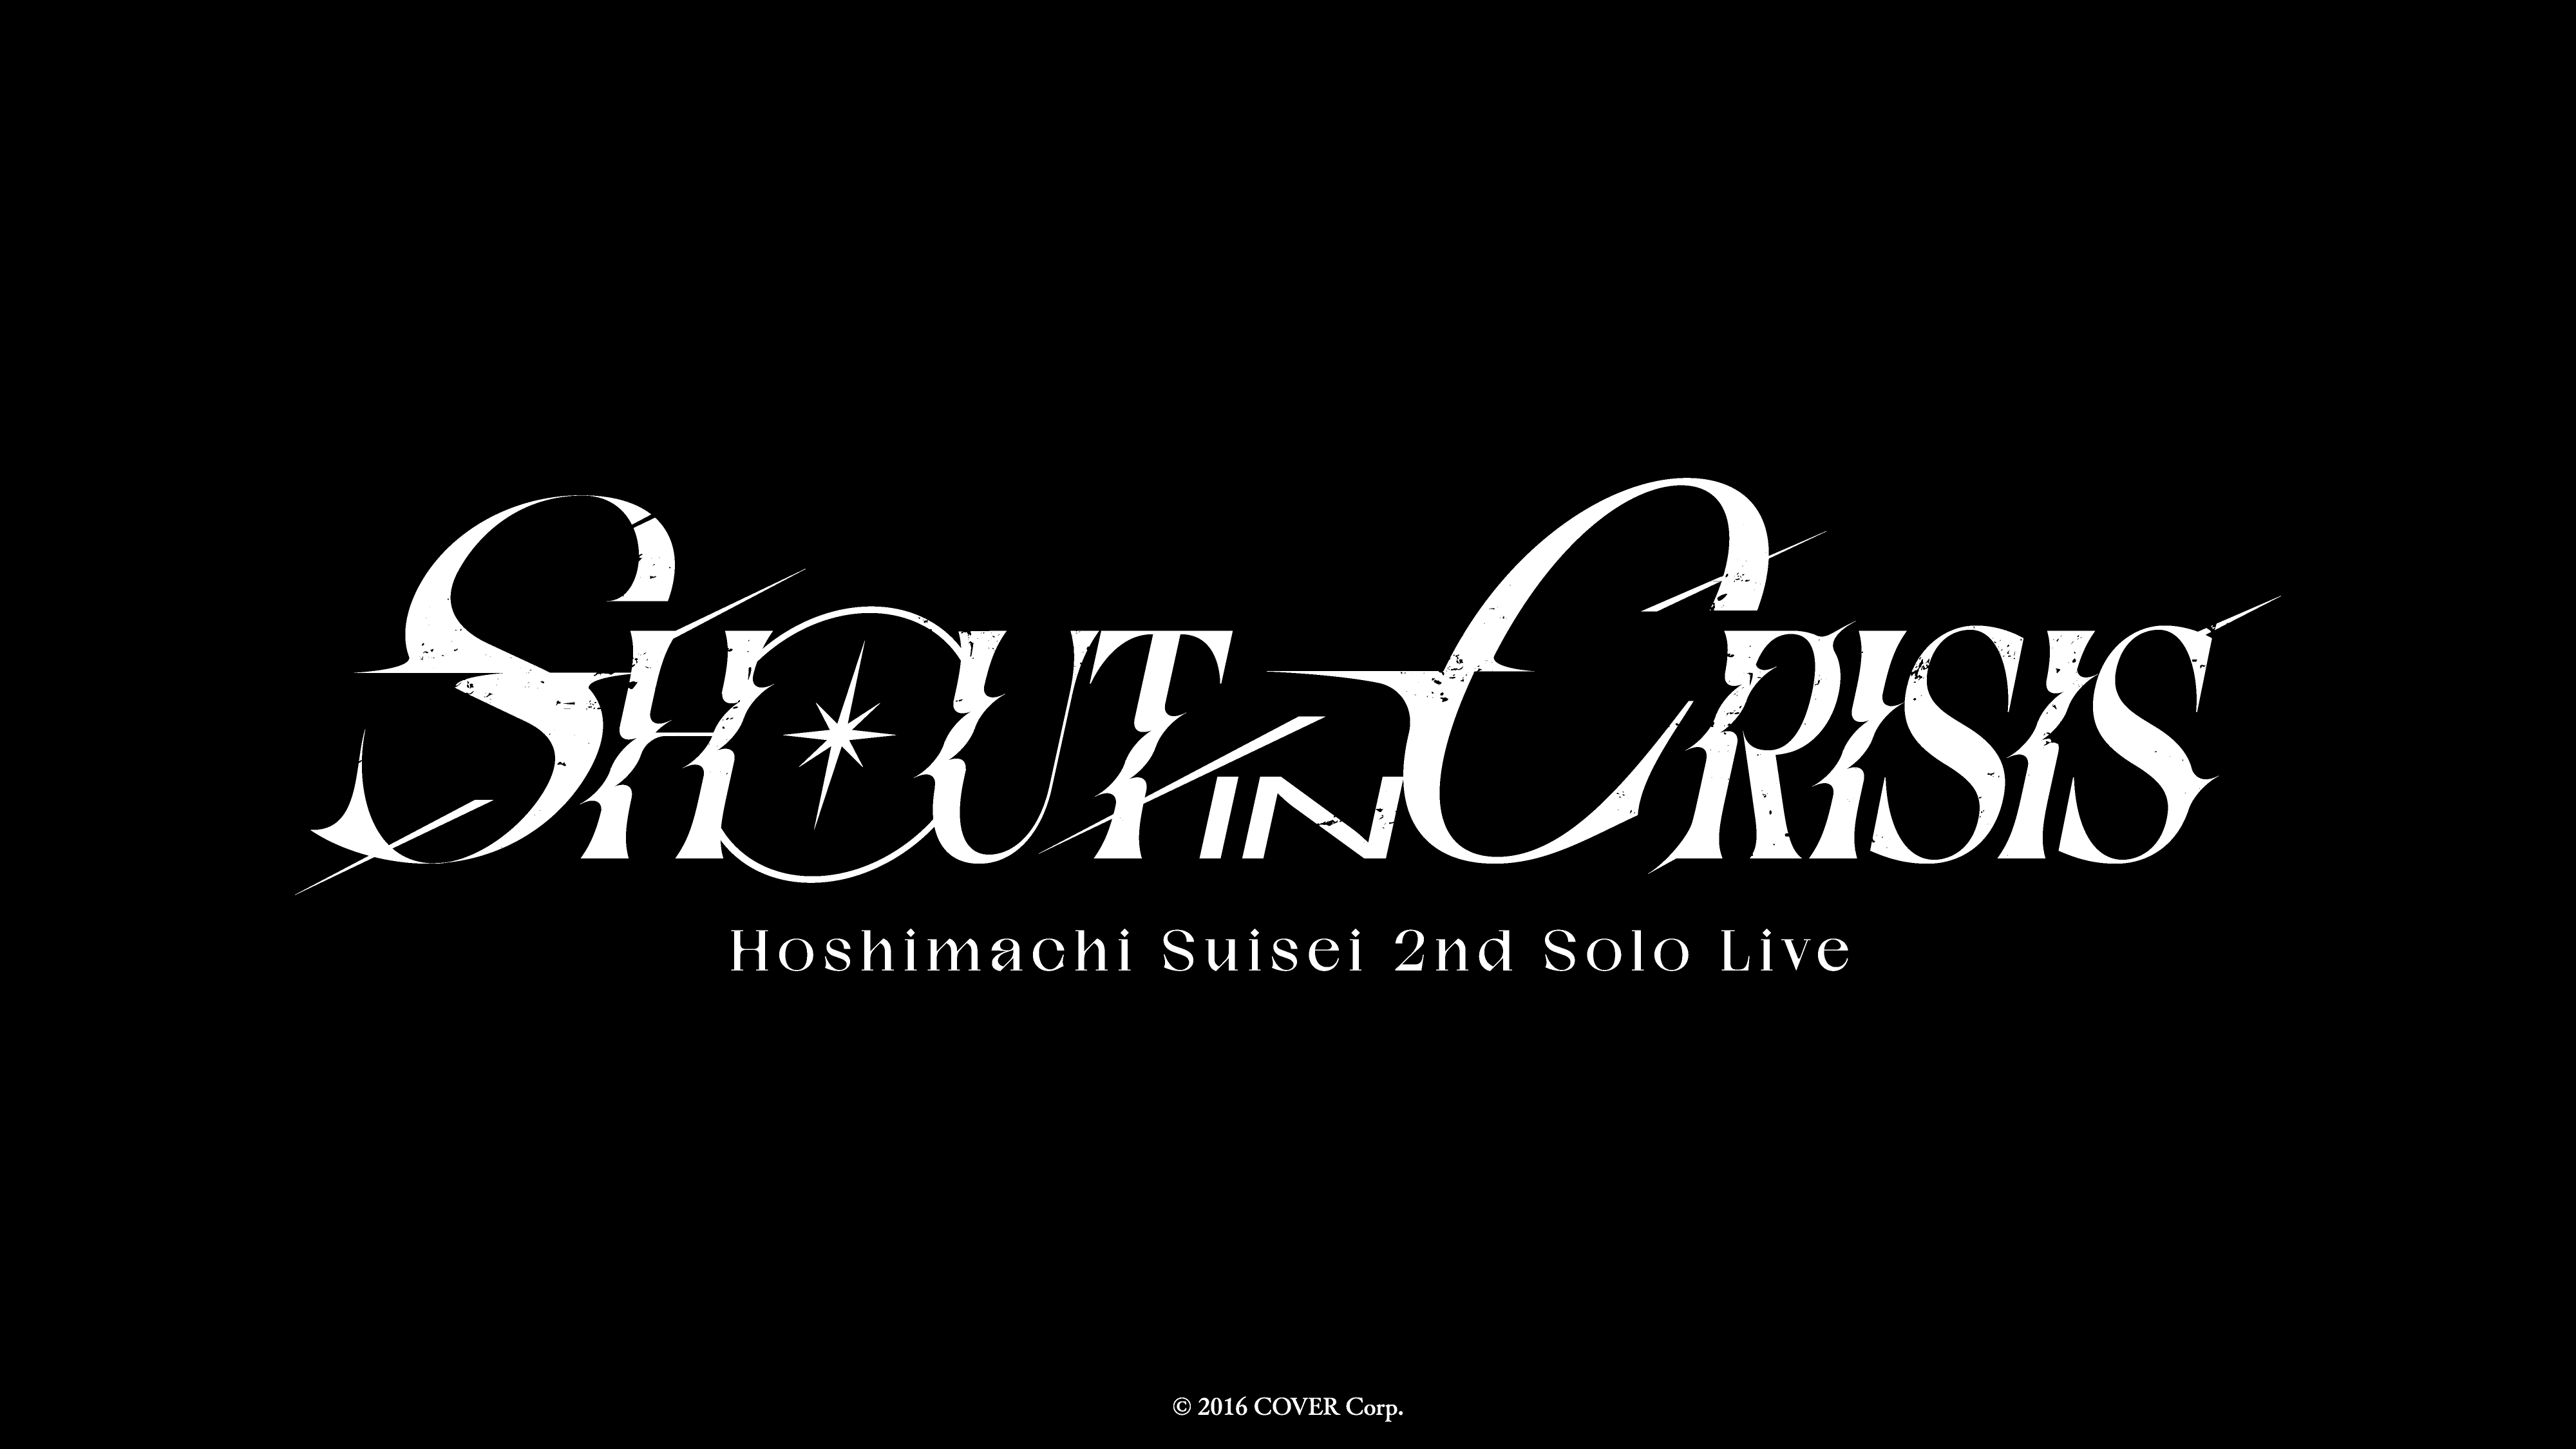 星街すいせい 2nd Solo Live Shout in Crisis